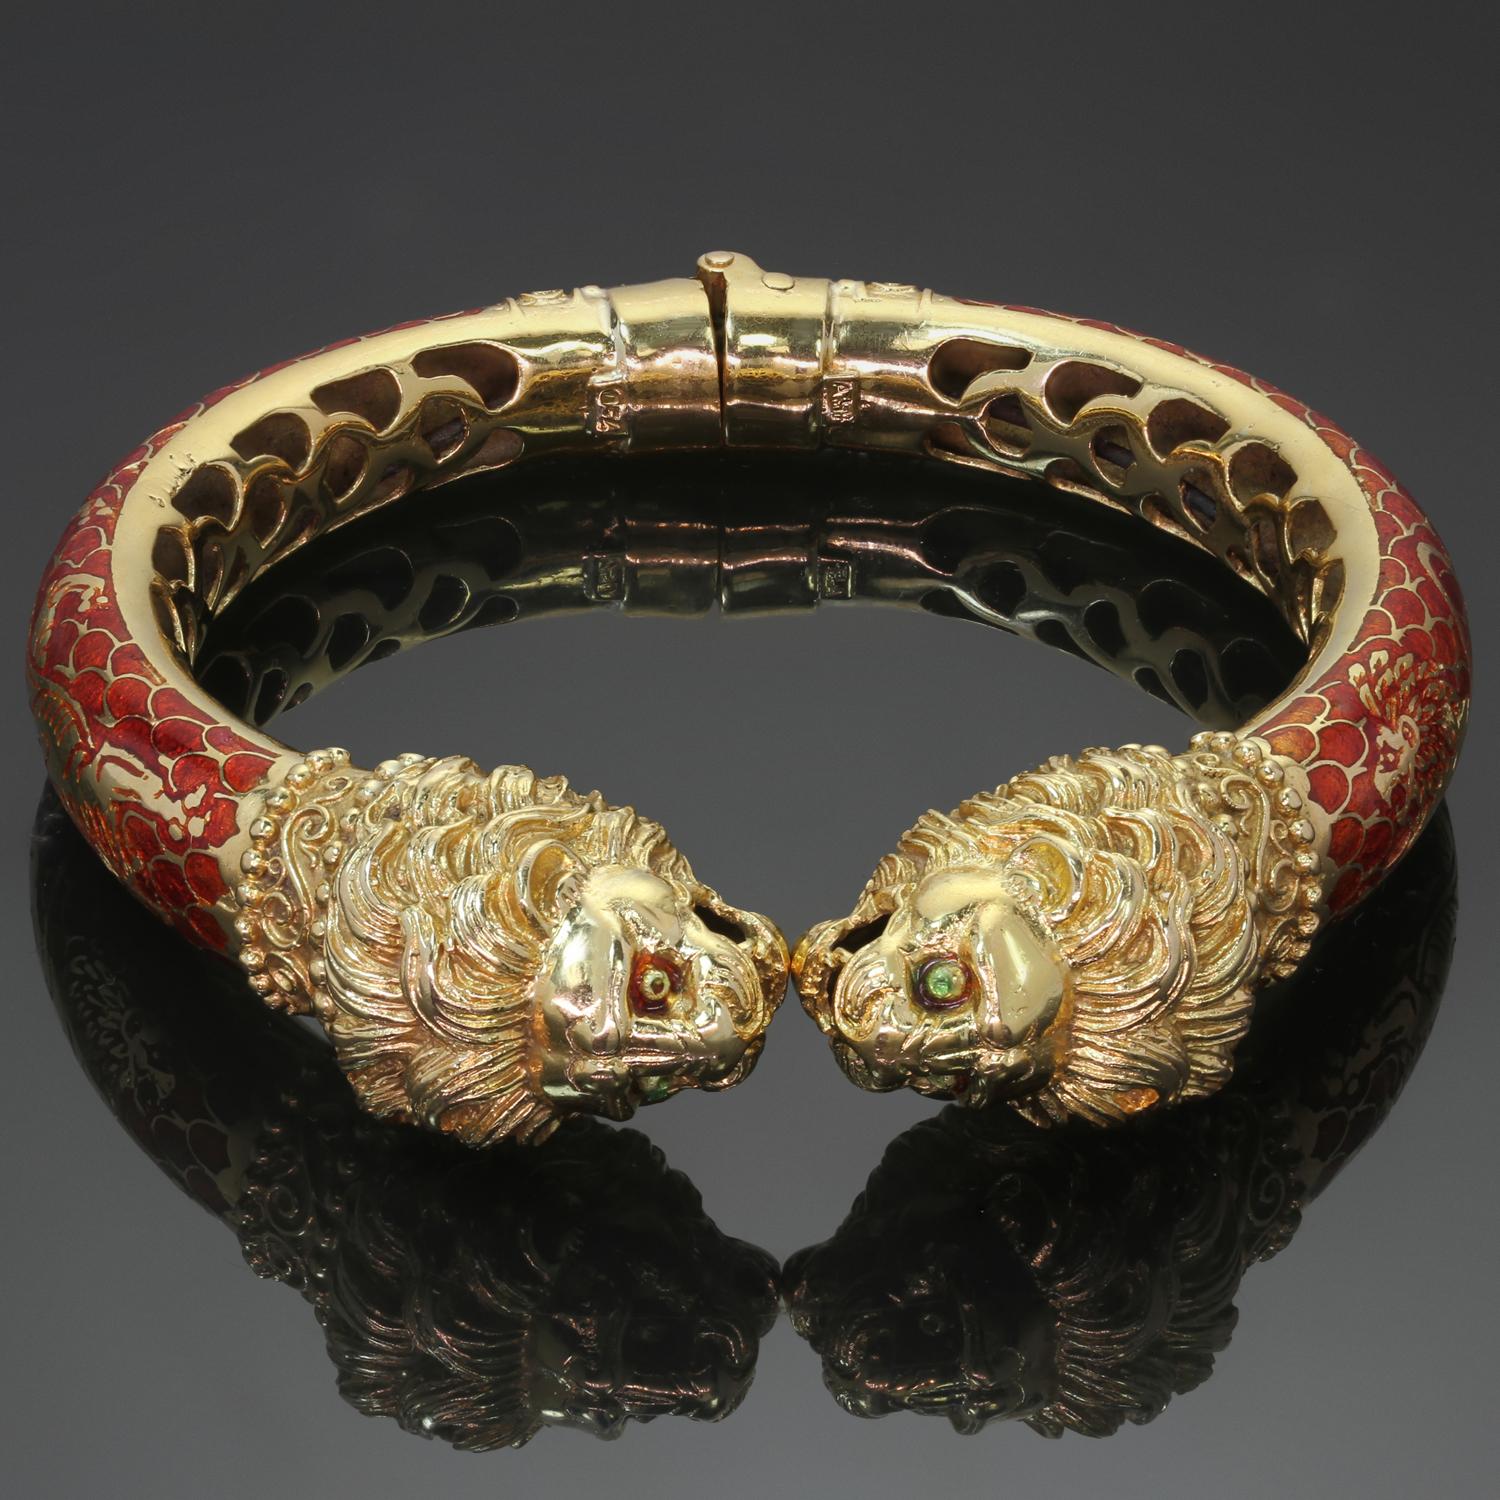 Ce magnifique bracelet vintage présente une chimère bicéphale en or jaune 18 carats et en émail rouge, rehaussée de magnifiques lions dorés sur les deux côtés du bracelet. Marque de fabrique A.5F.  Fabriqué en Grèce vers les années 1980. Dimensions